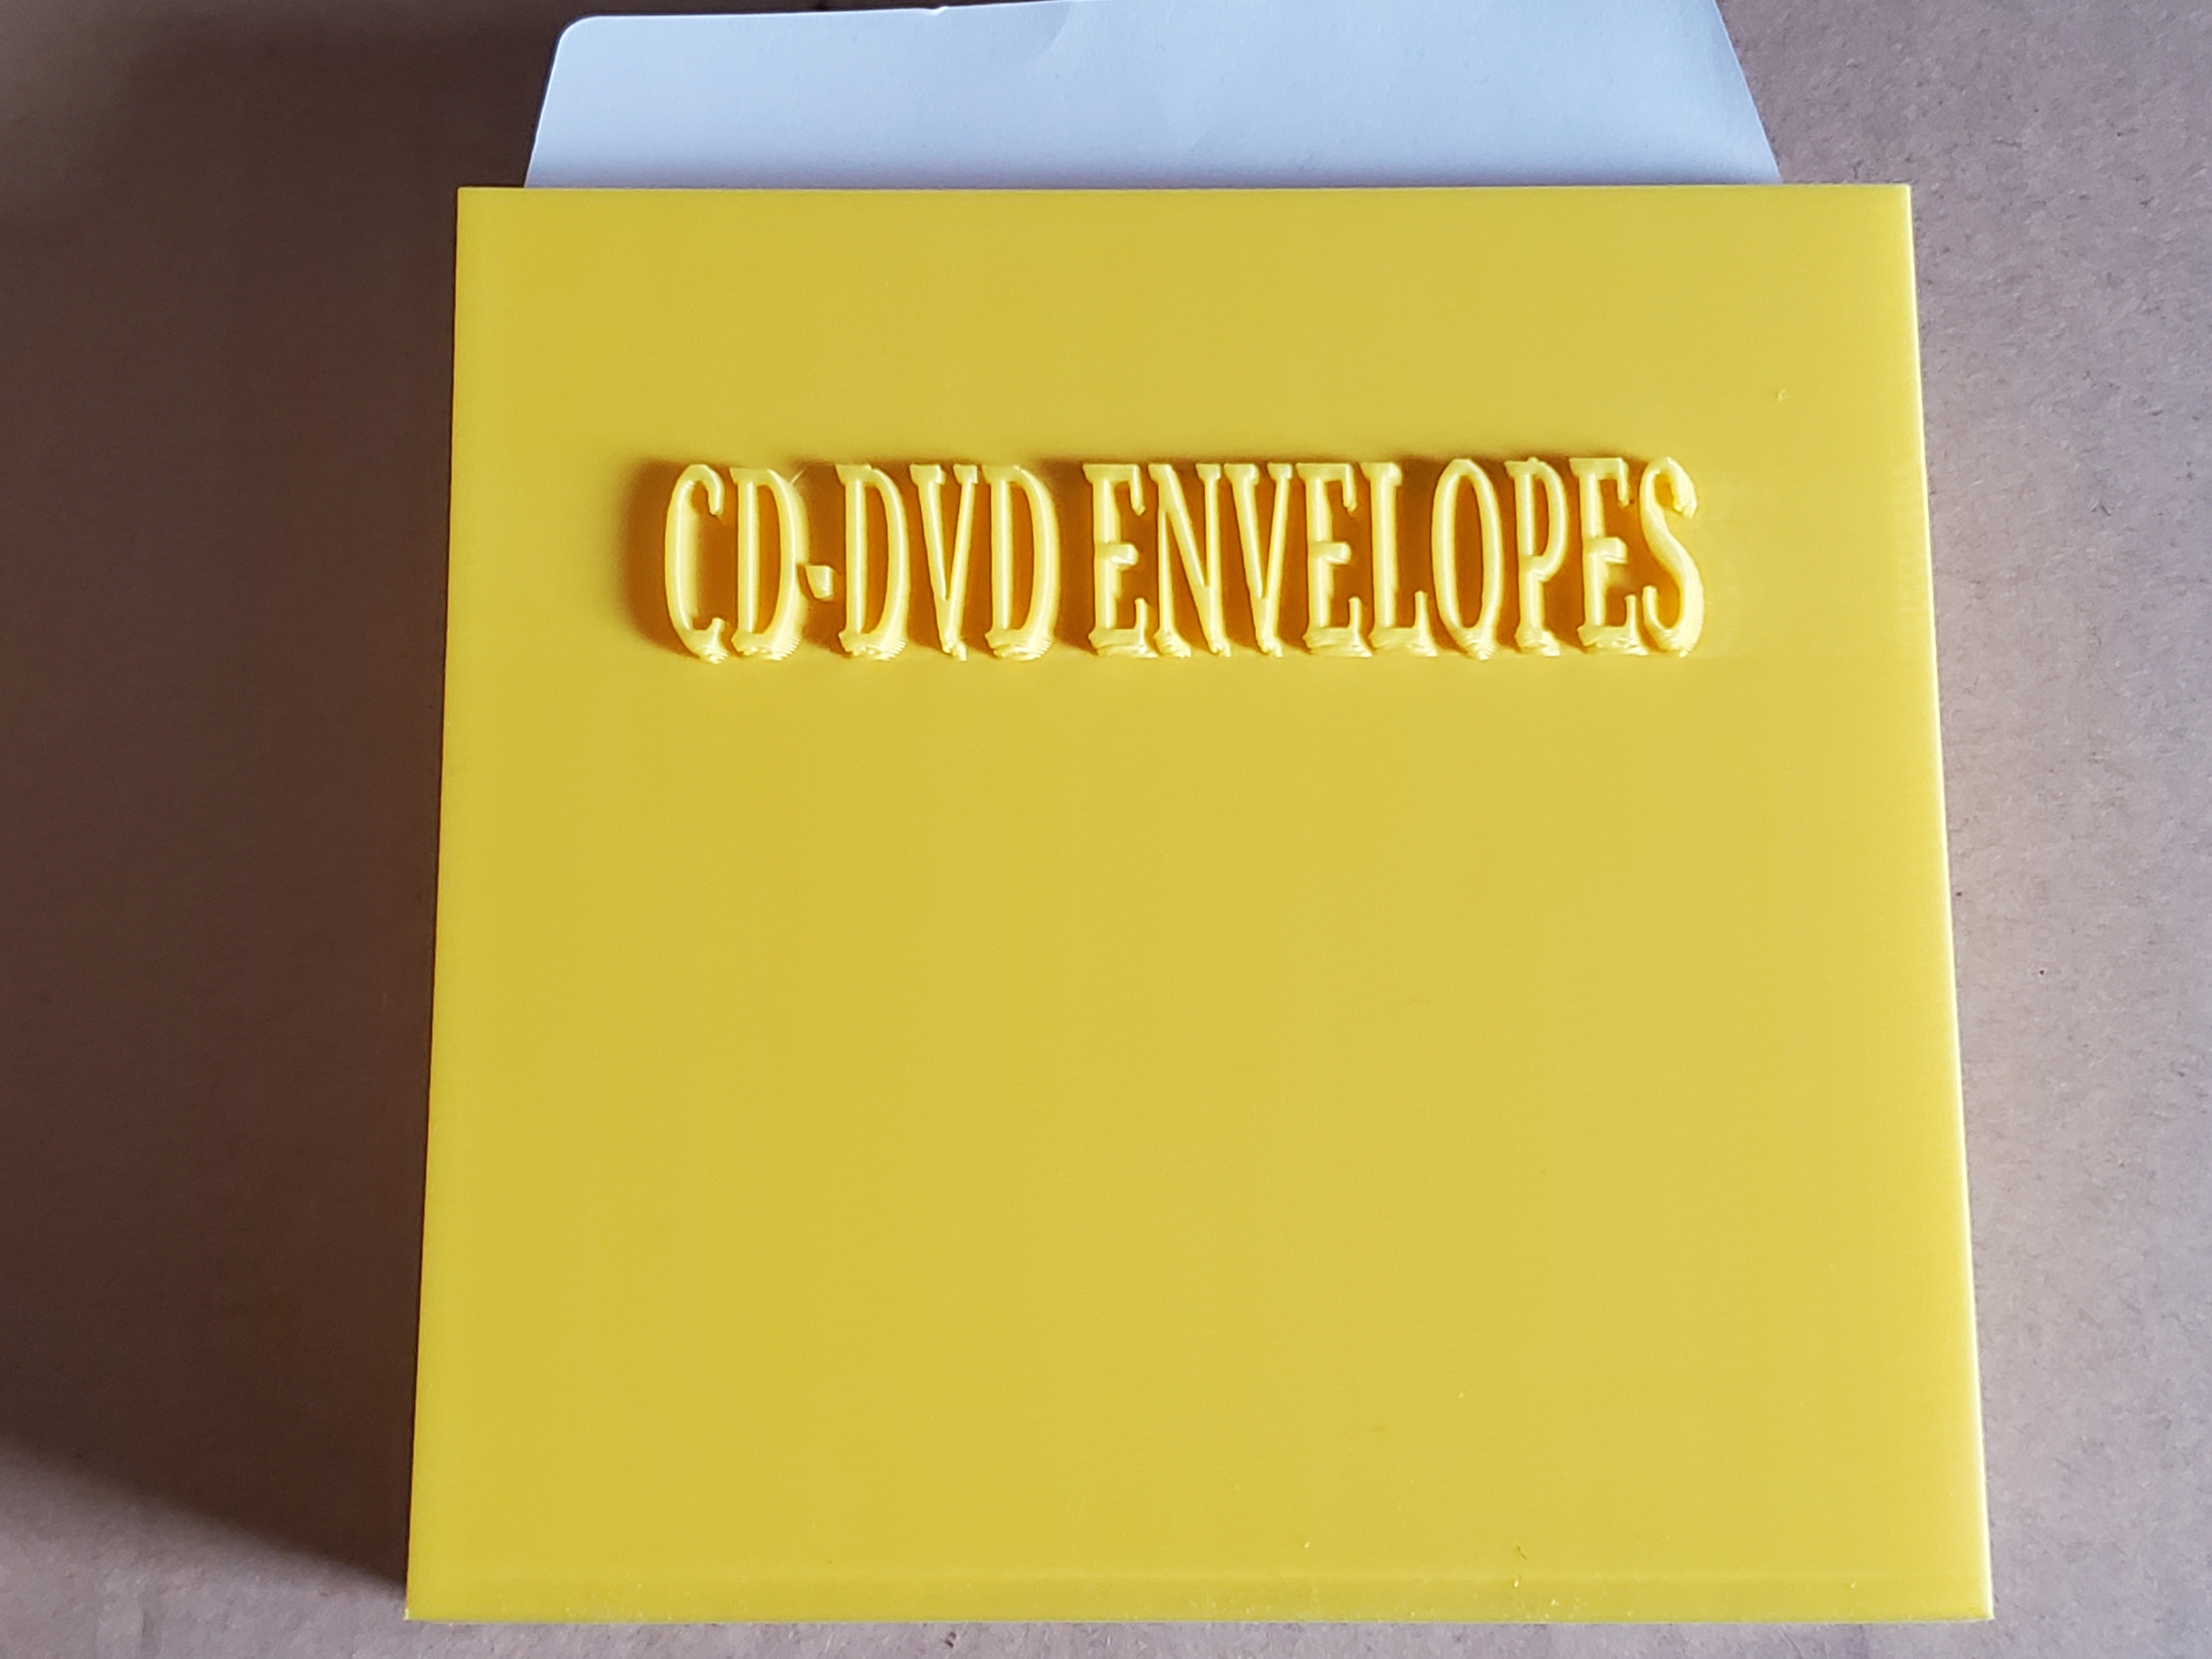 CD-DVD Envelope Holder